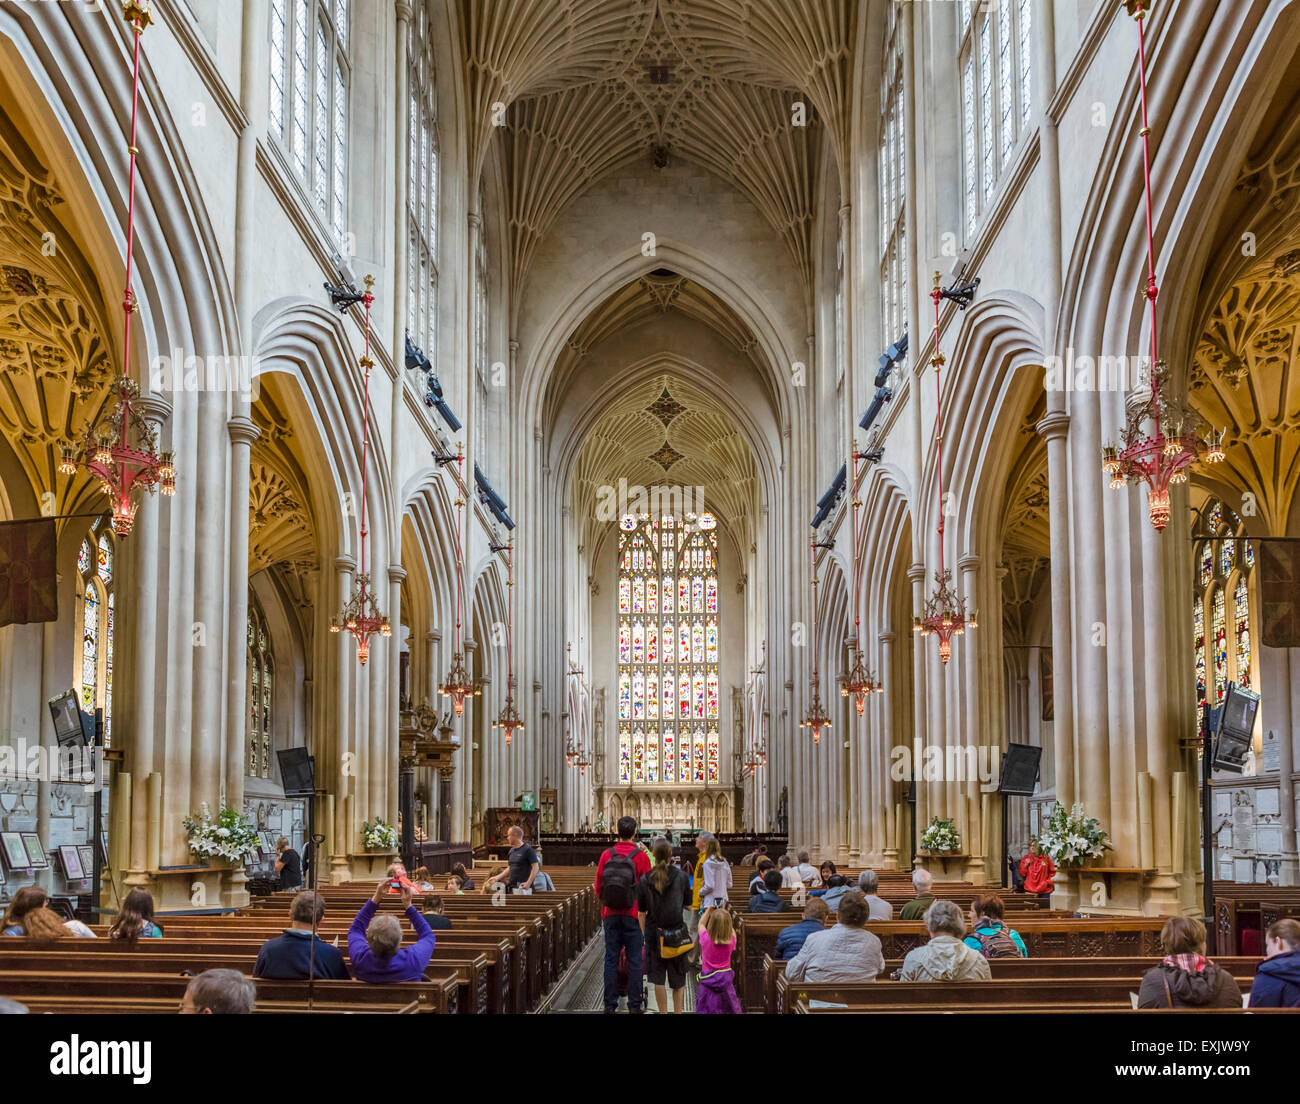 Intérieur de l'abbaye de Bath, Bath, Somerset, England, UK Banque D'Images